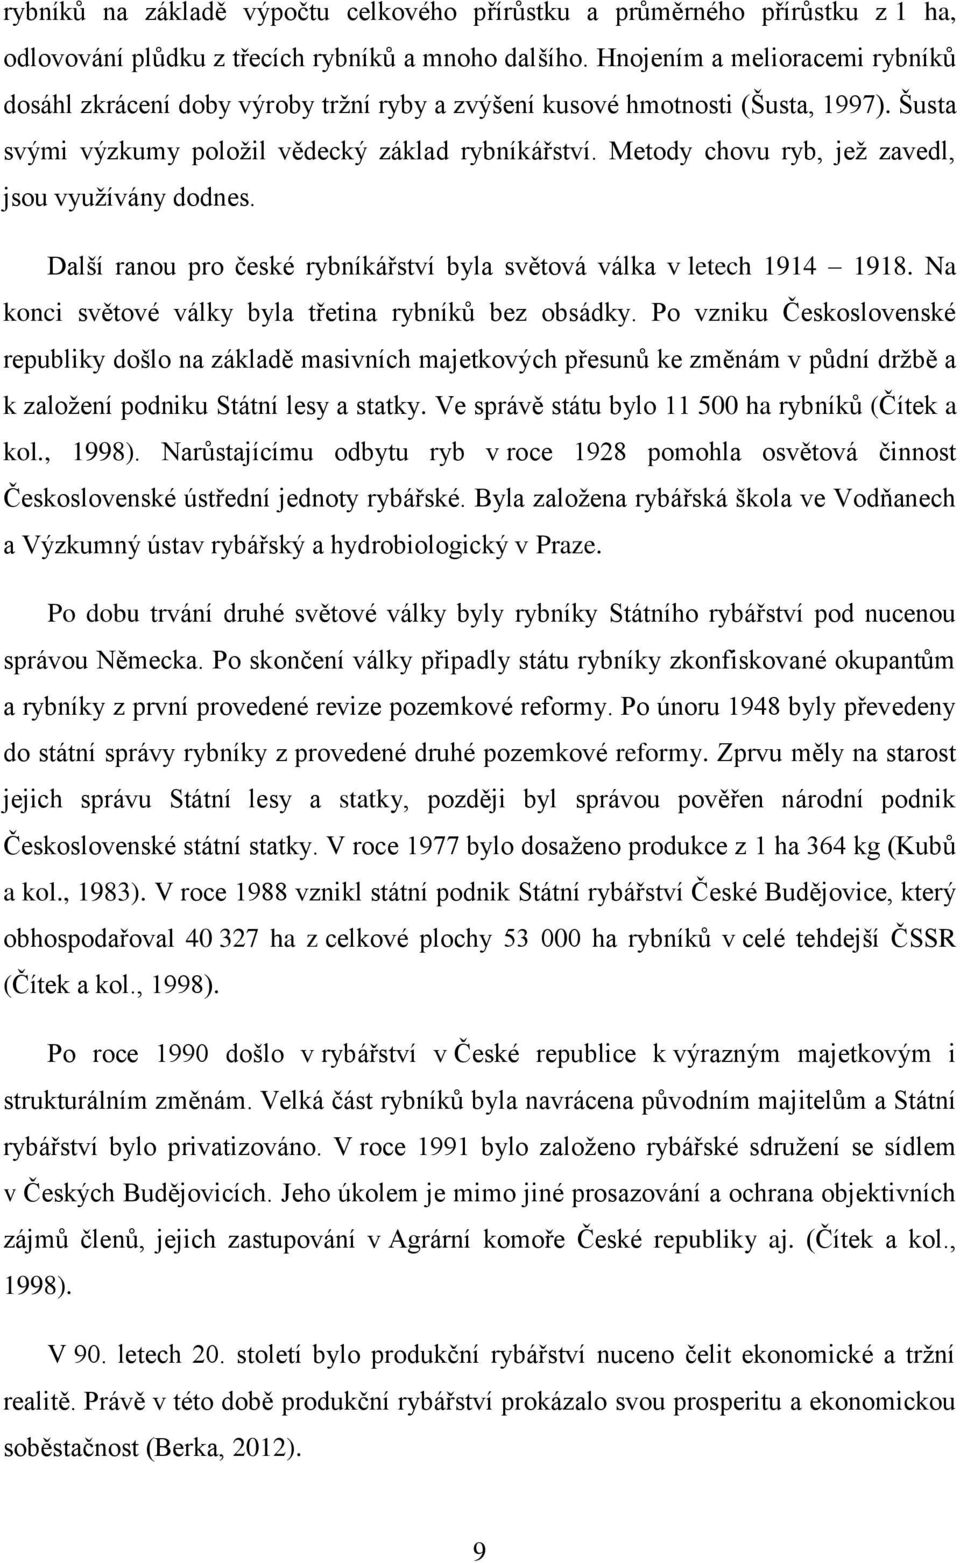 Metody chovu ryb, jež zavedl, jsou využívány dodnes. Další ranou pro české rybníkářství byla světová válka v letech 1914 1918. Na konci světové války byla třetina rybníků bez obsádky.